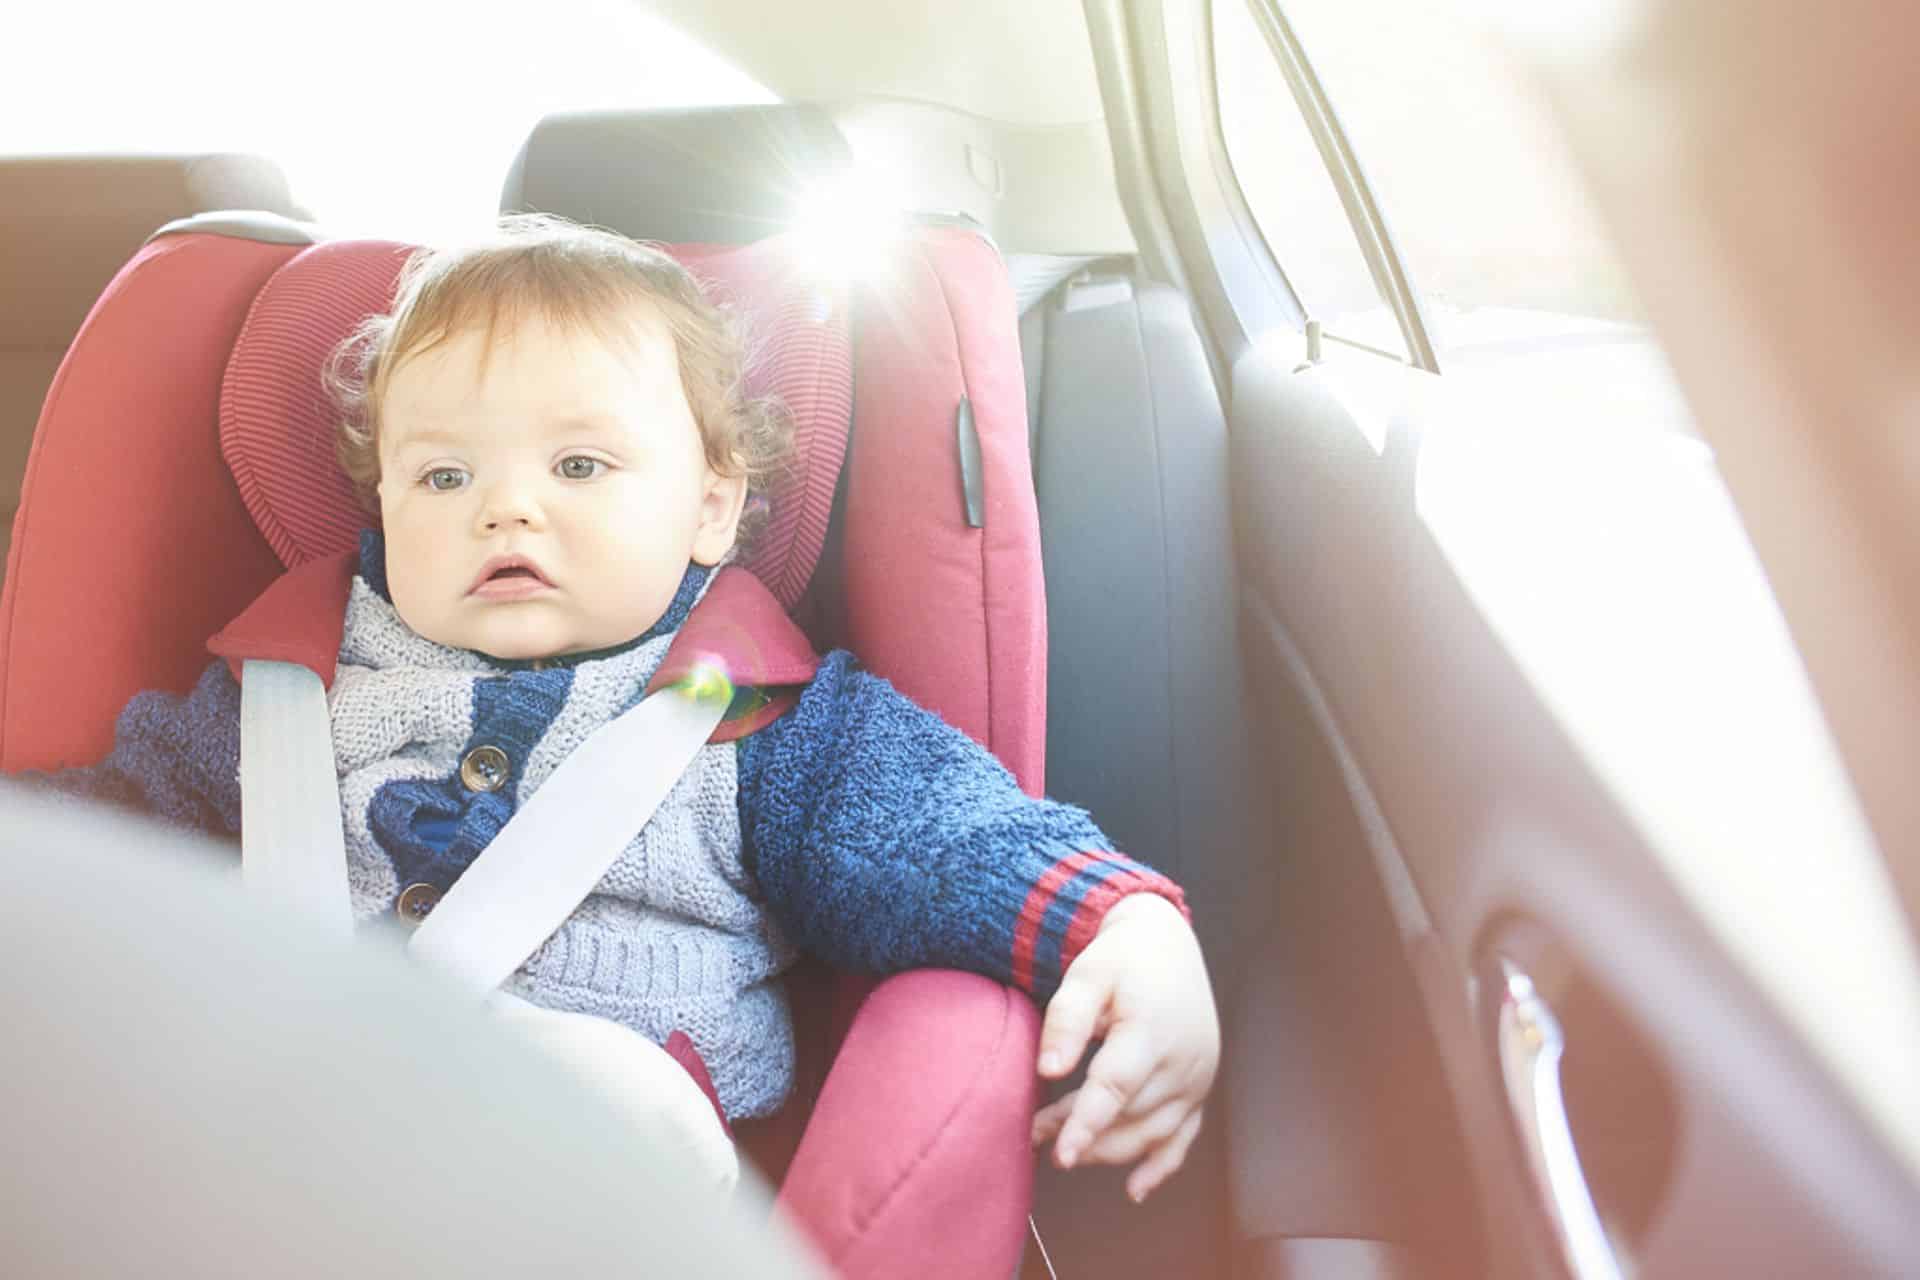 Dit gebeurt met een baby als het te warm wordt in de auto